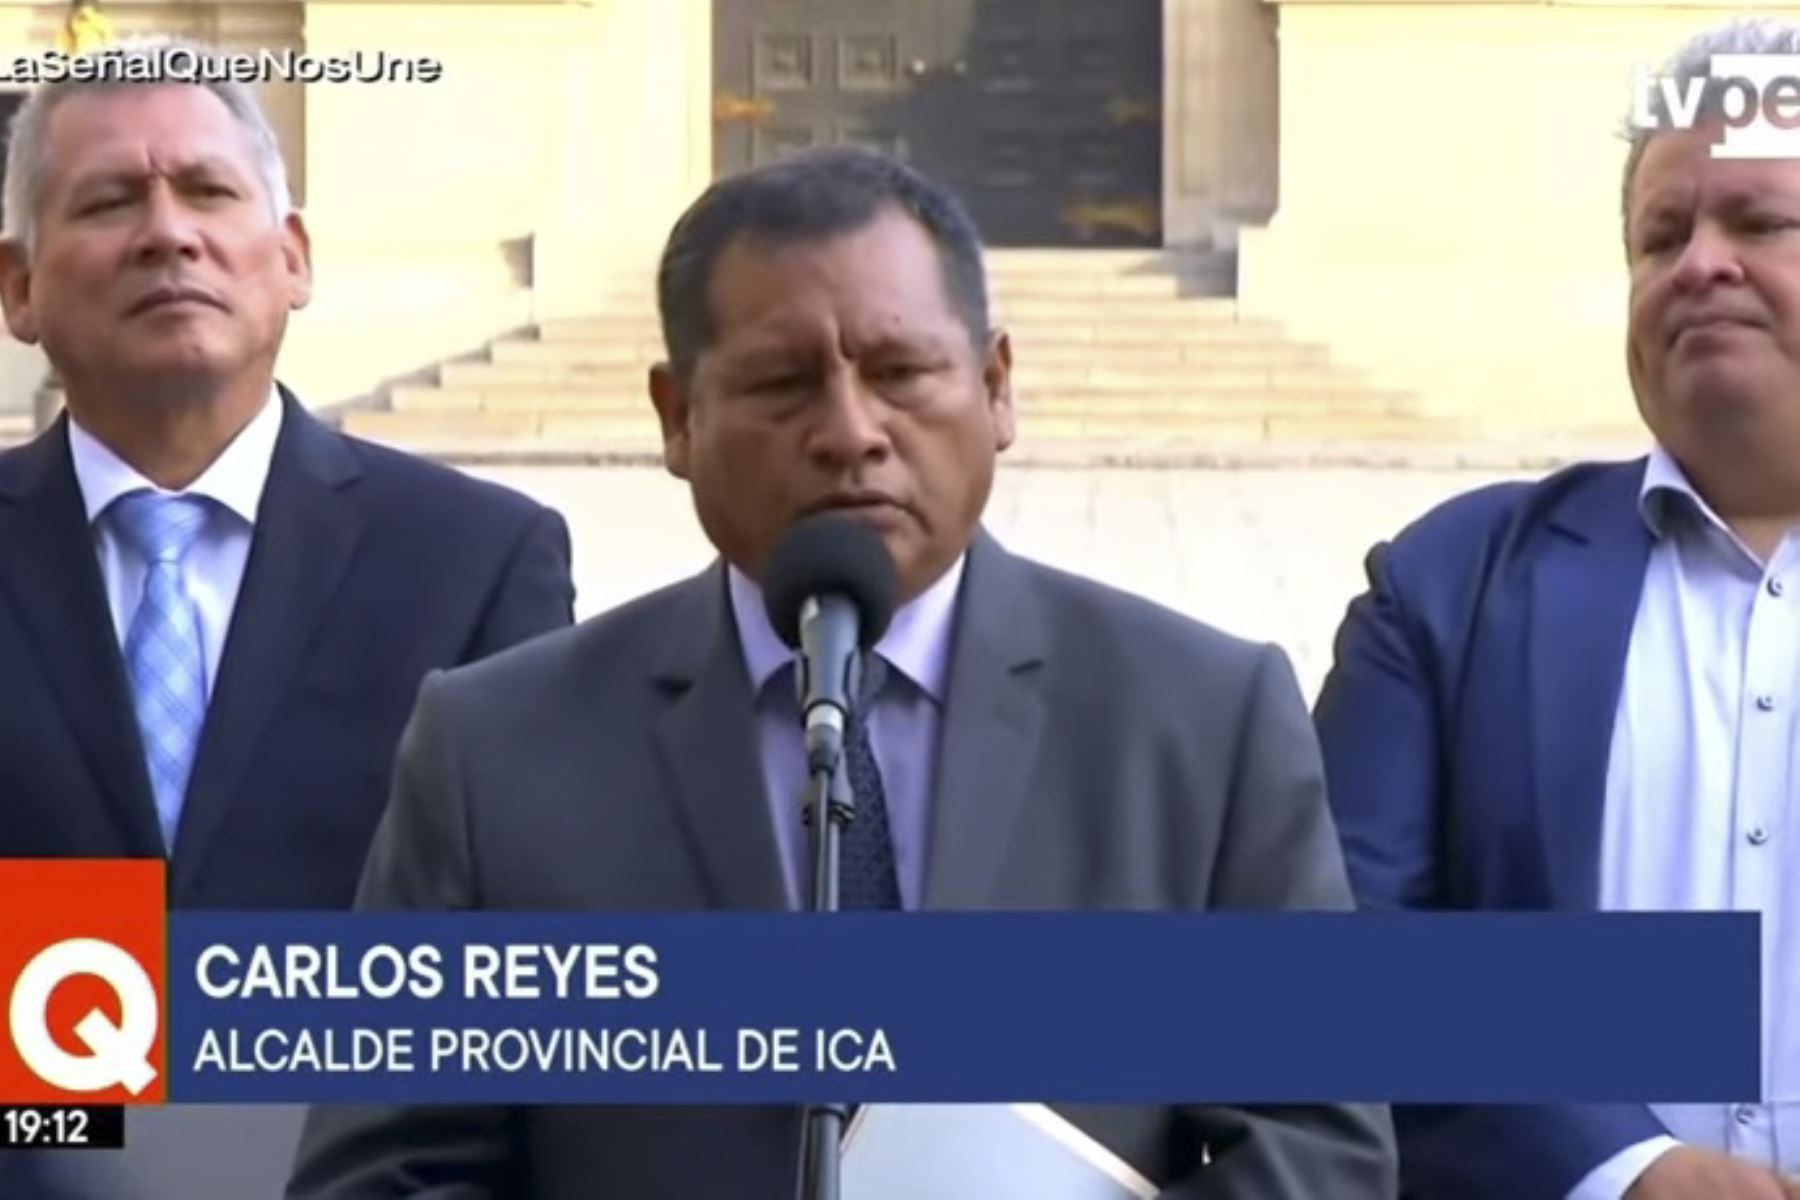 Alcalde provincial de Ica, Carlos Reyes, visitó Palacio de Gobierno. Captura TV